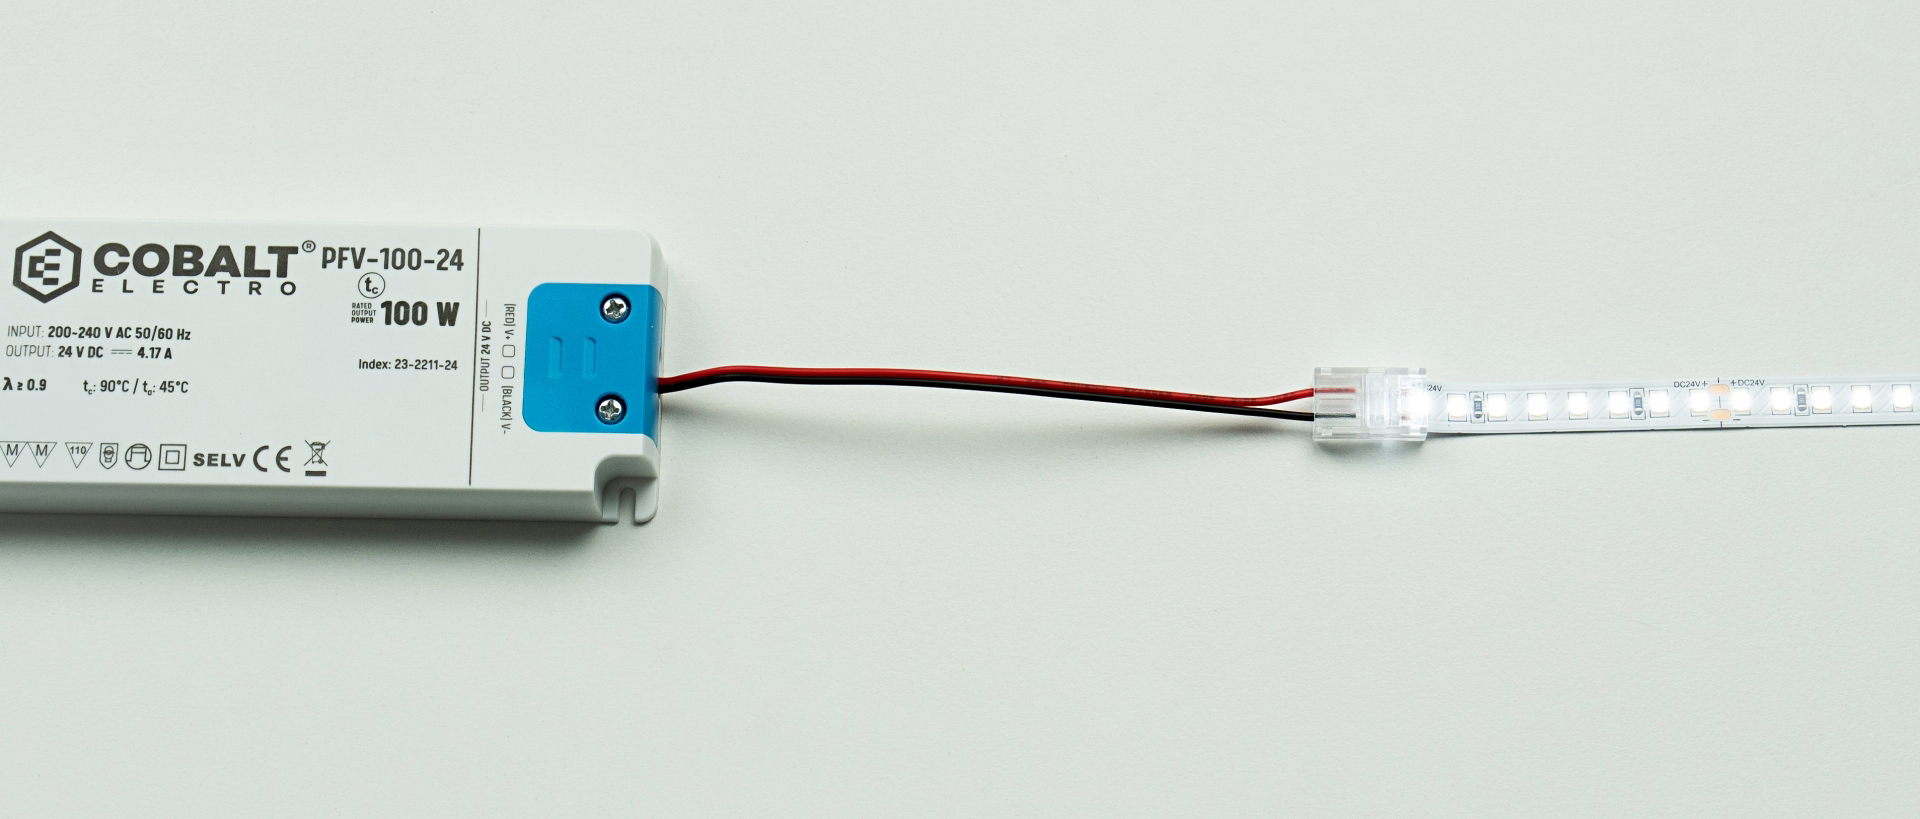 Schemat połączenia taśmy LED i zasilacze przy pomocy złączki jednostronnej z przewodem